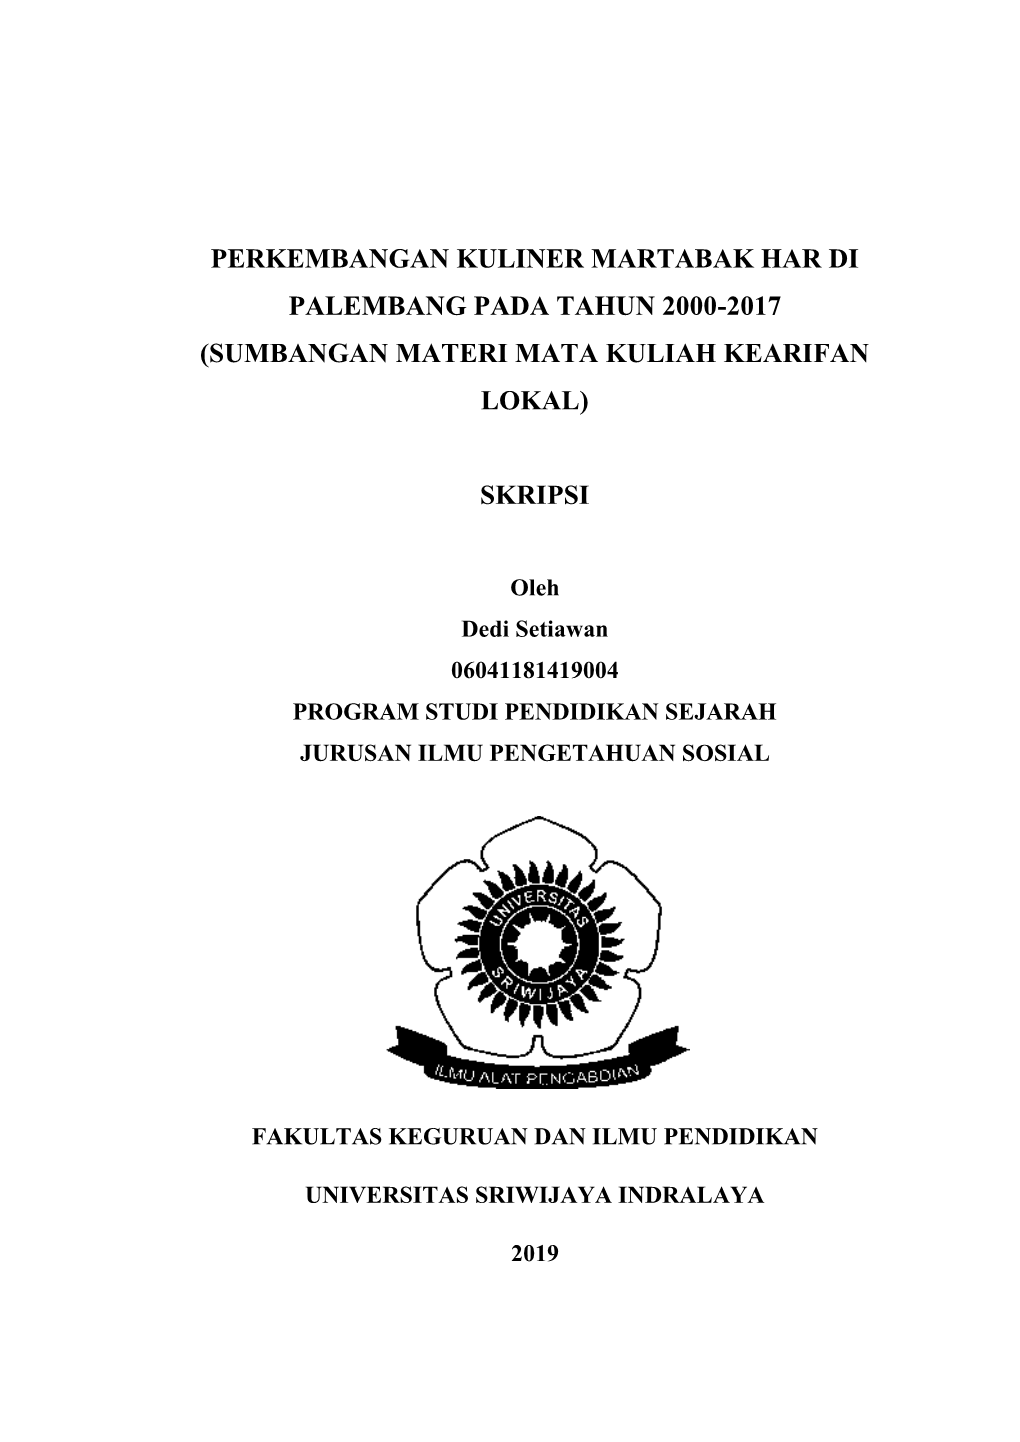 Perkembangan Kuliner Martabak Har Di Palembang Pada Tahun 2000-2017 (Sumbangan Materi Mata Kuliah Kearifan Lokal)